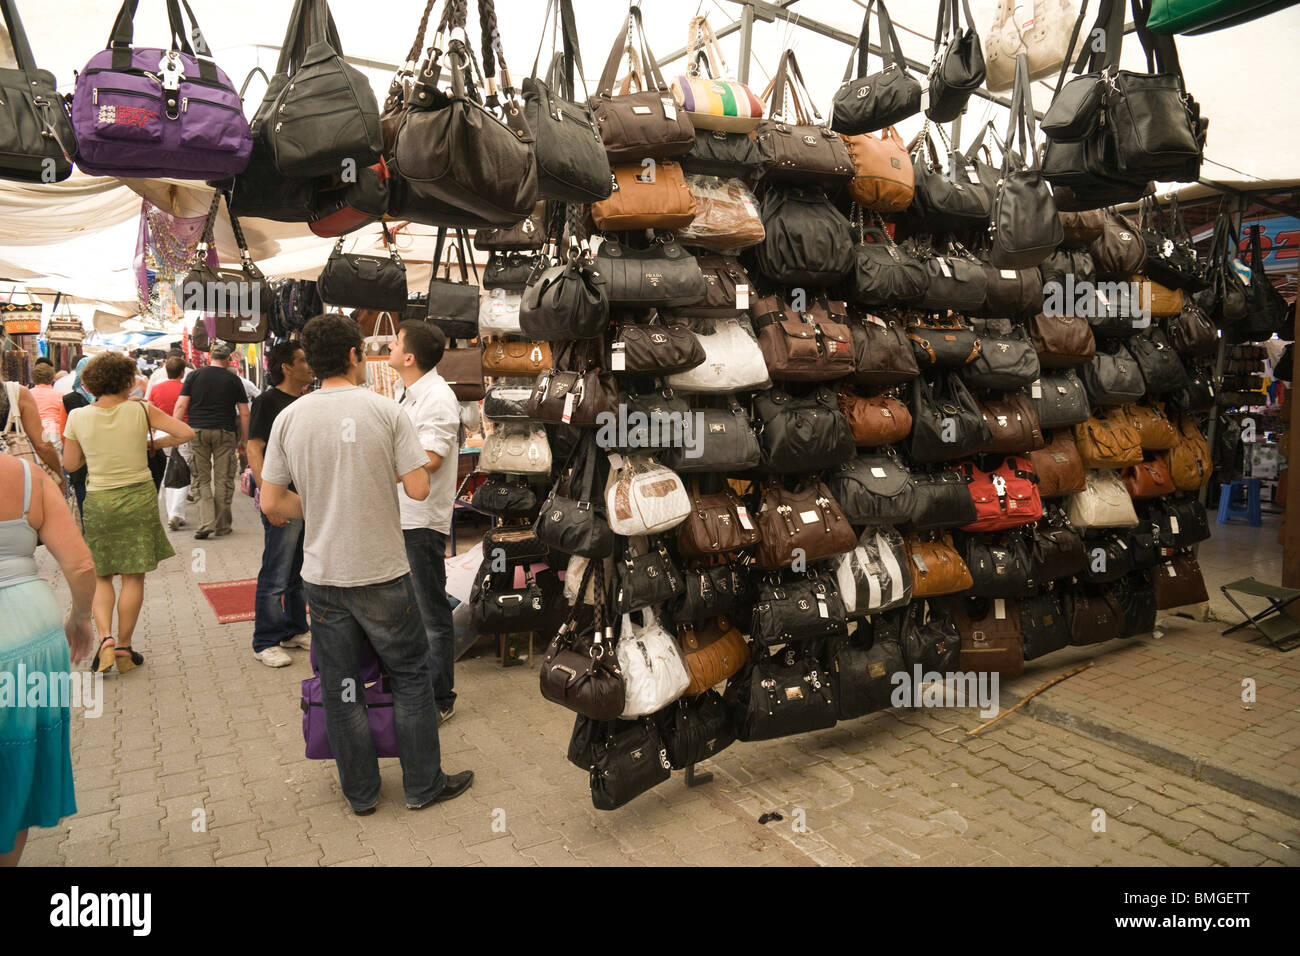 La Turchia Antalya - Manavgat mercato - fake o copia di borse in pelle con Chanel, Prada, D&G e altri designer loghi di marchi ed etichette Foto Stock